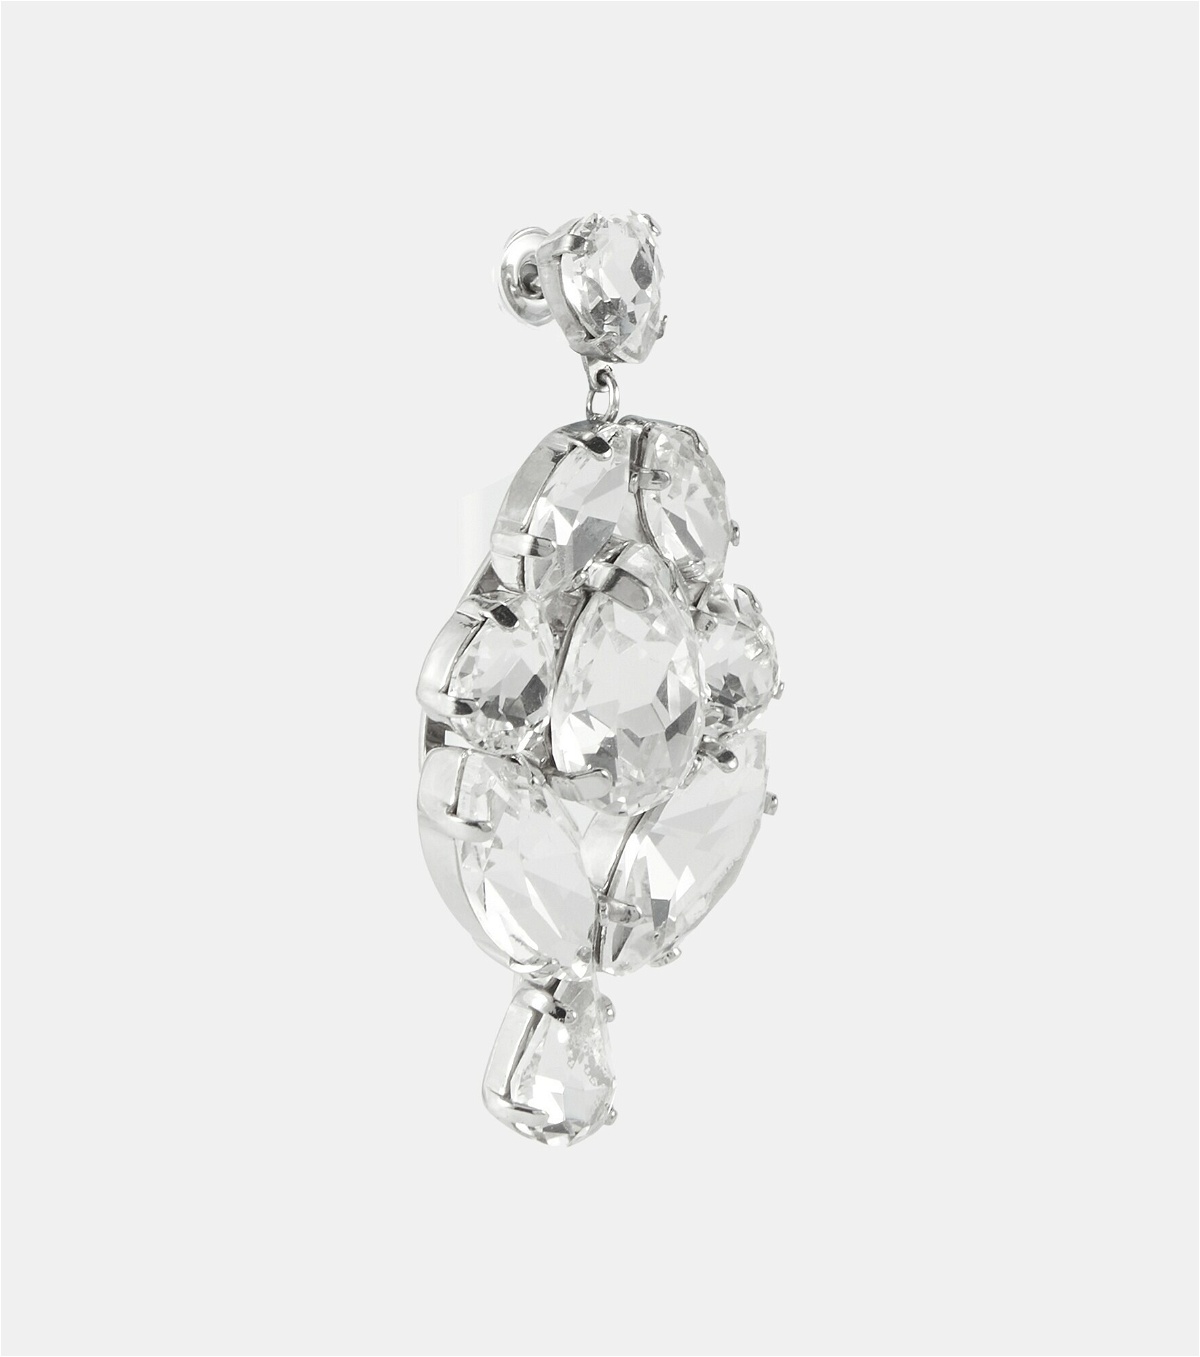 Simone Rocha - Crystal-embellished earrings Simone Rocha